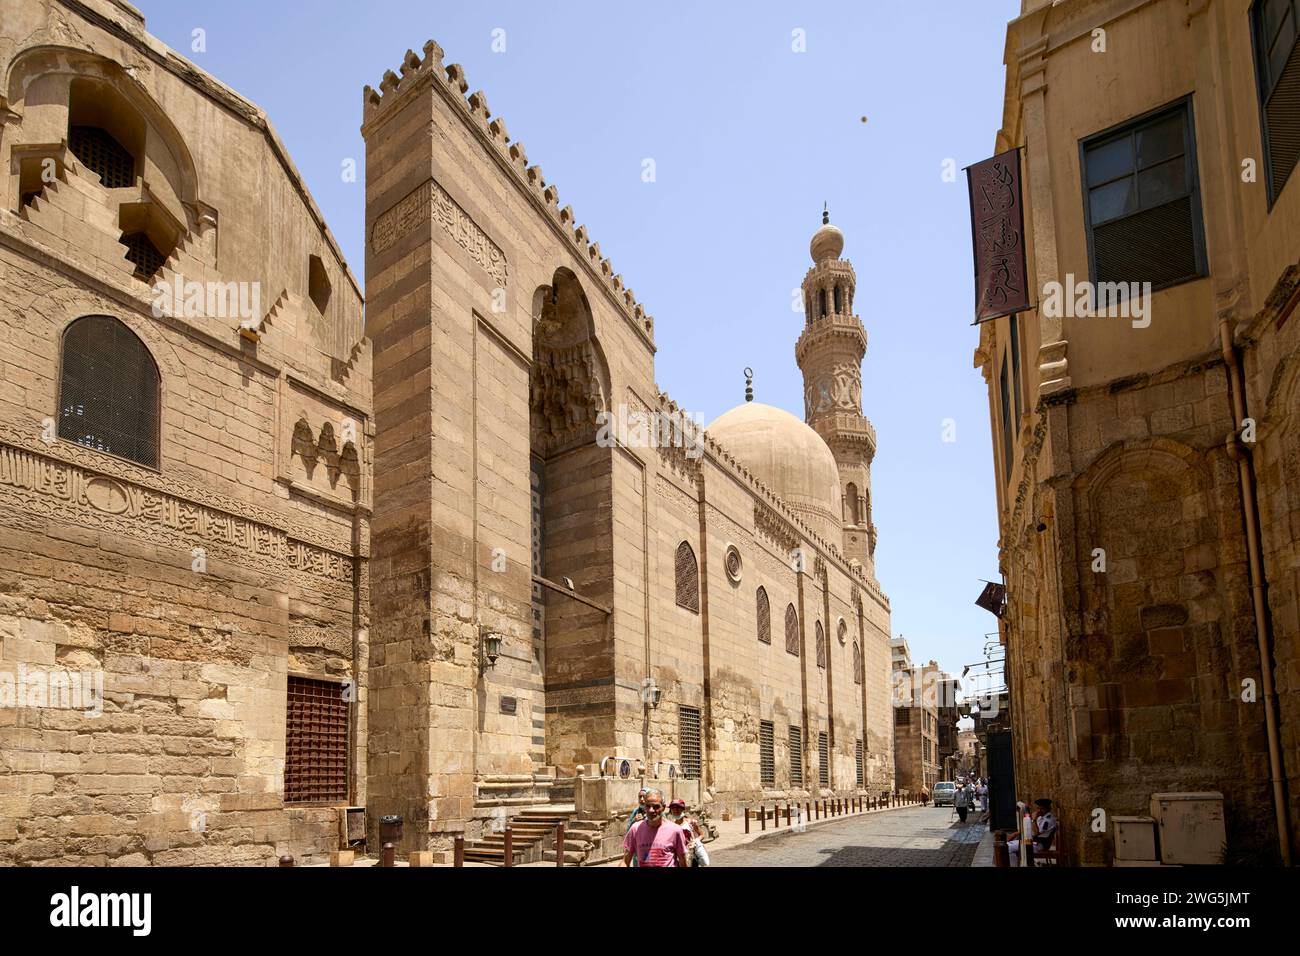 Mosquée Madrasa du complexe Sultan Barquq sur la rue Muizz au Caire, Egypte Banque D'Images